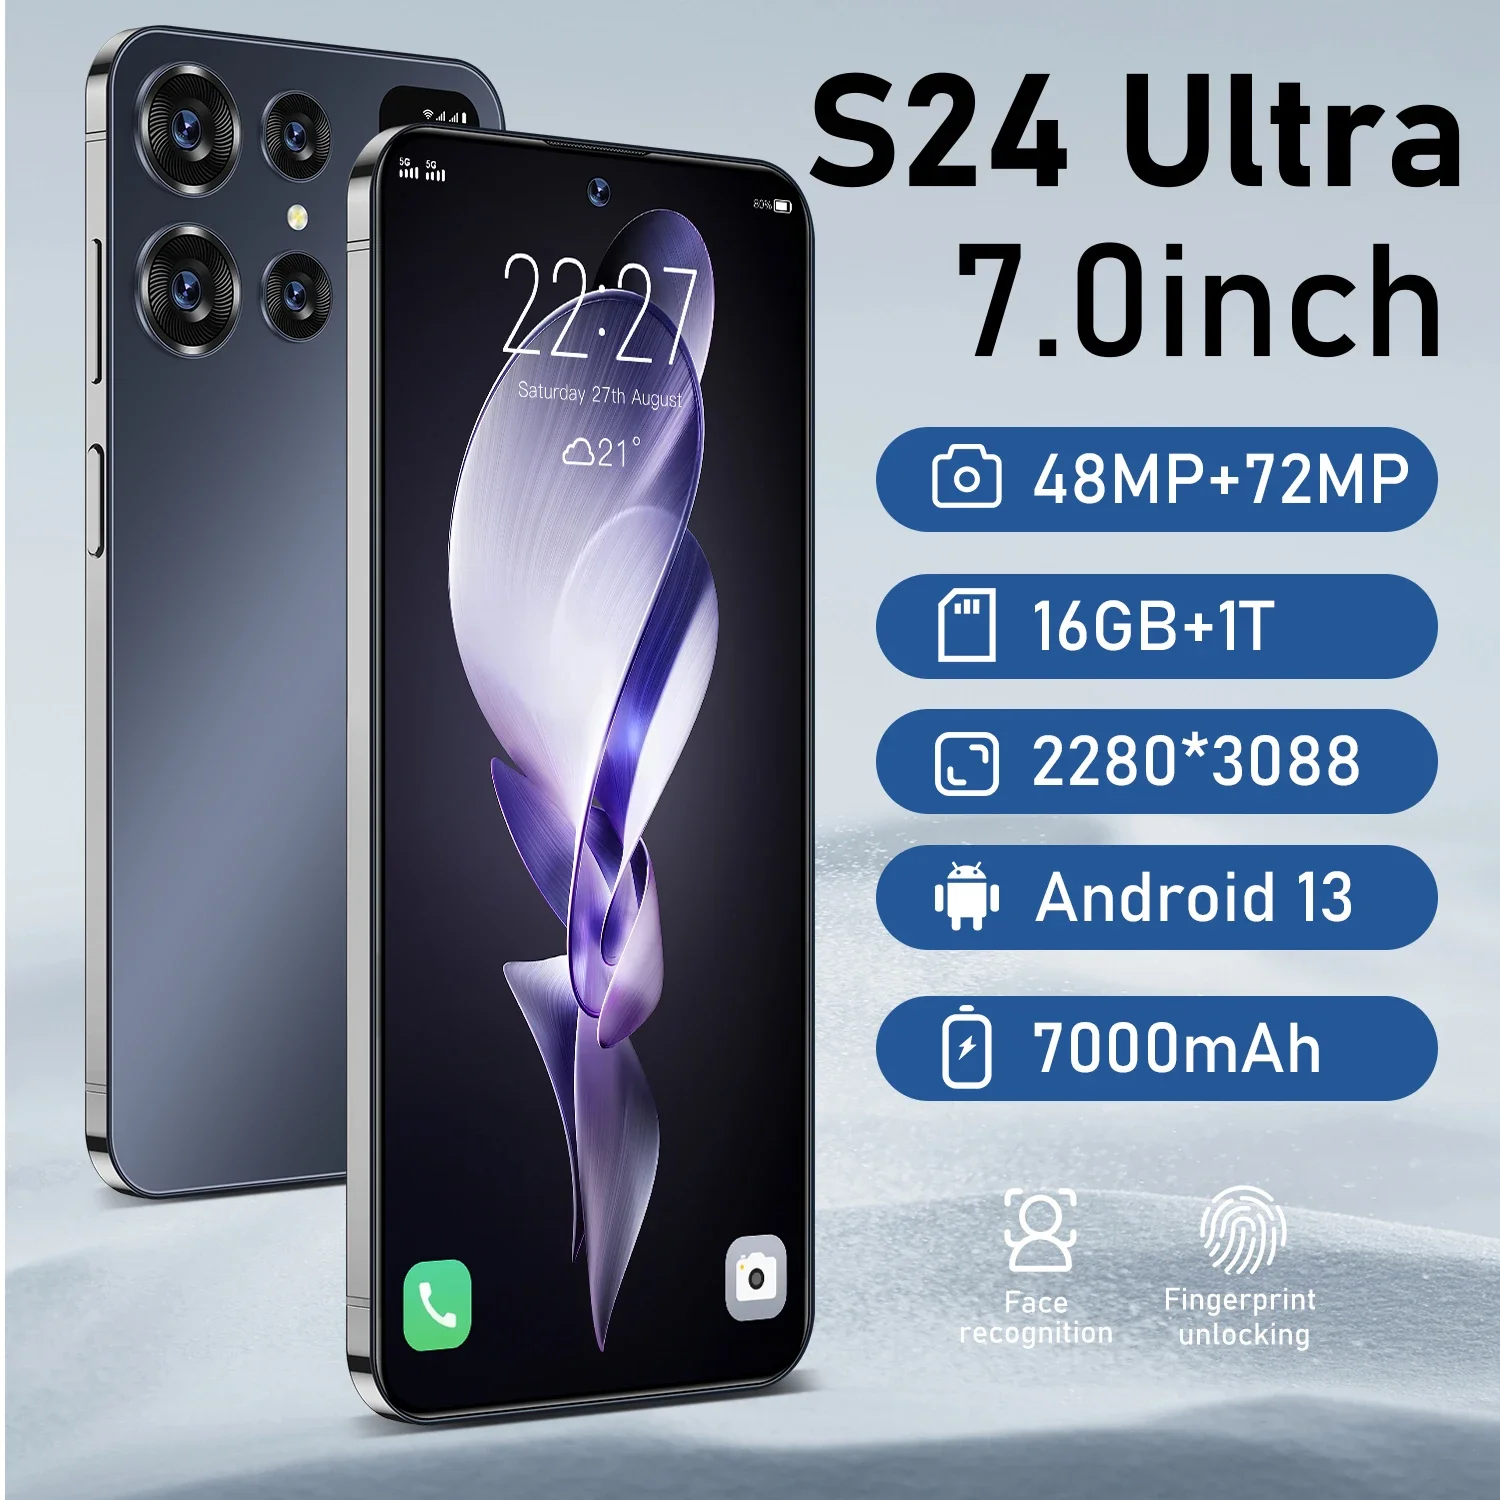 

Новый оригинальный смартфон S24 Ultra, HD экран 7,0 дюйма, 16 ГБ + 1 ТБ, телефон с двумя Sim-картами, Android 13, разблокировка по лицу, 7000 мАч, 72 МП